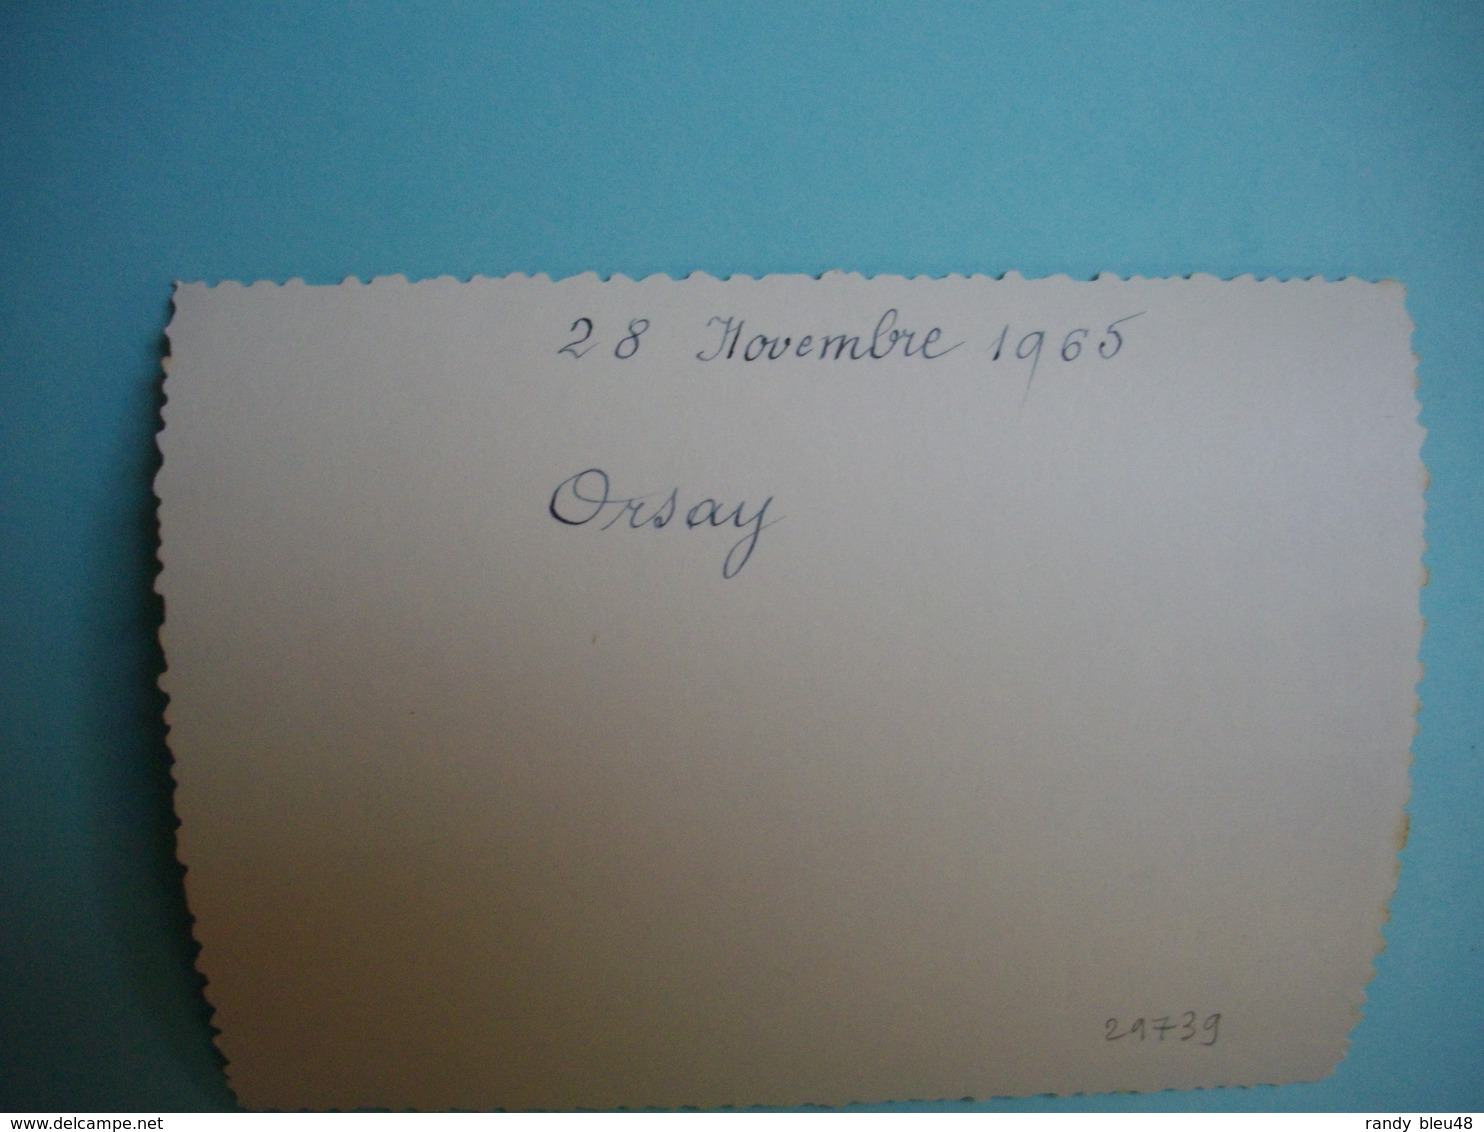 PHOTOGRAPHIE   ORSAY  -  91  -  Centre Du Bourg  -  Parfumerie  -  Charcuterie  -  8,3 X  11  Cms - 1965 -  Essonne - Orsay